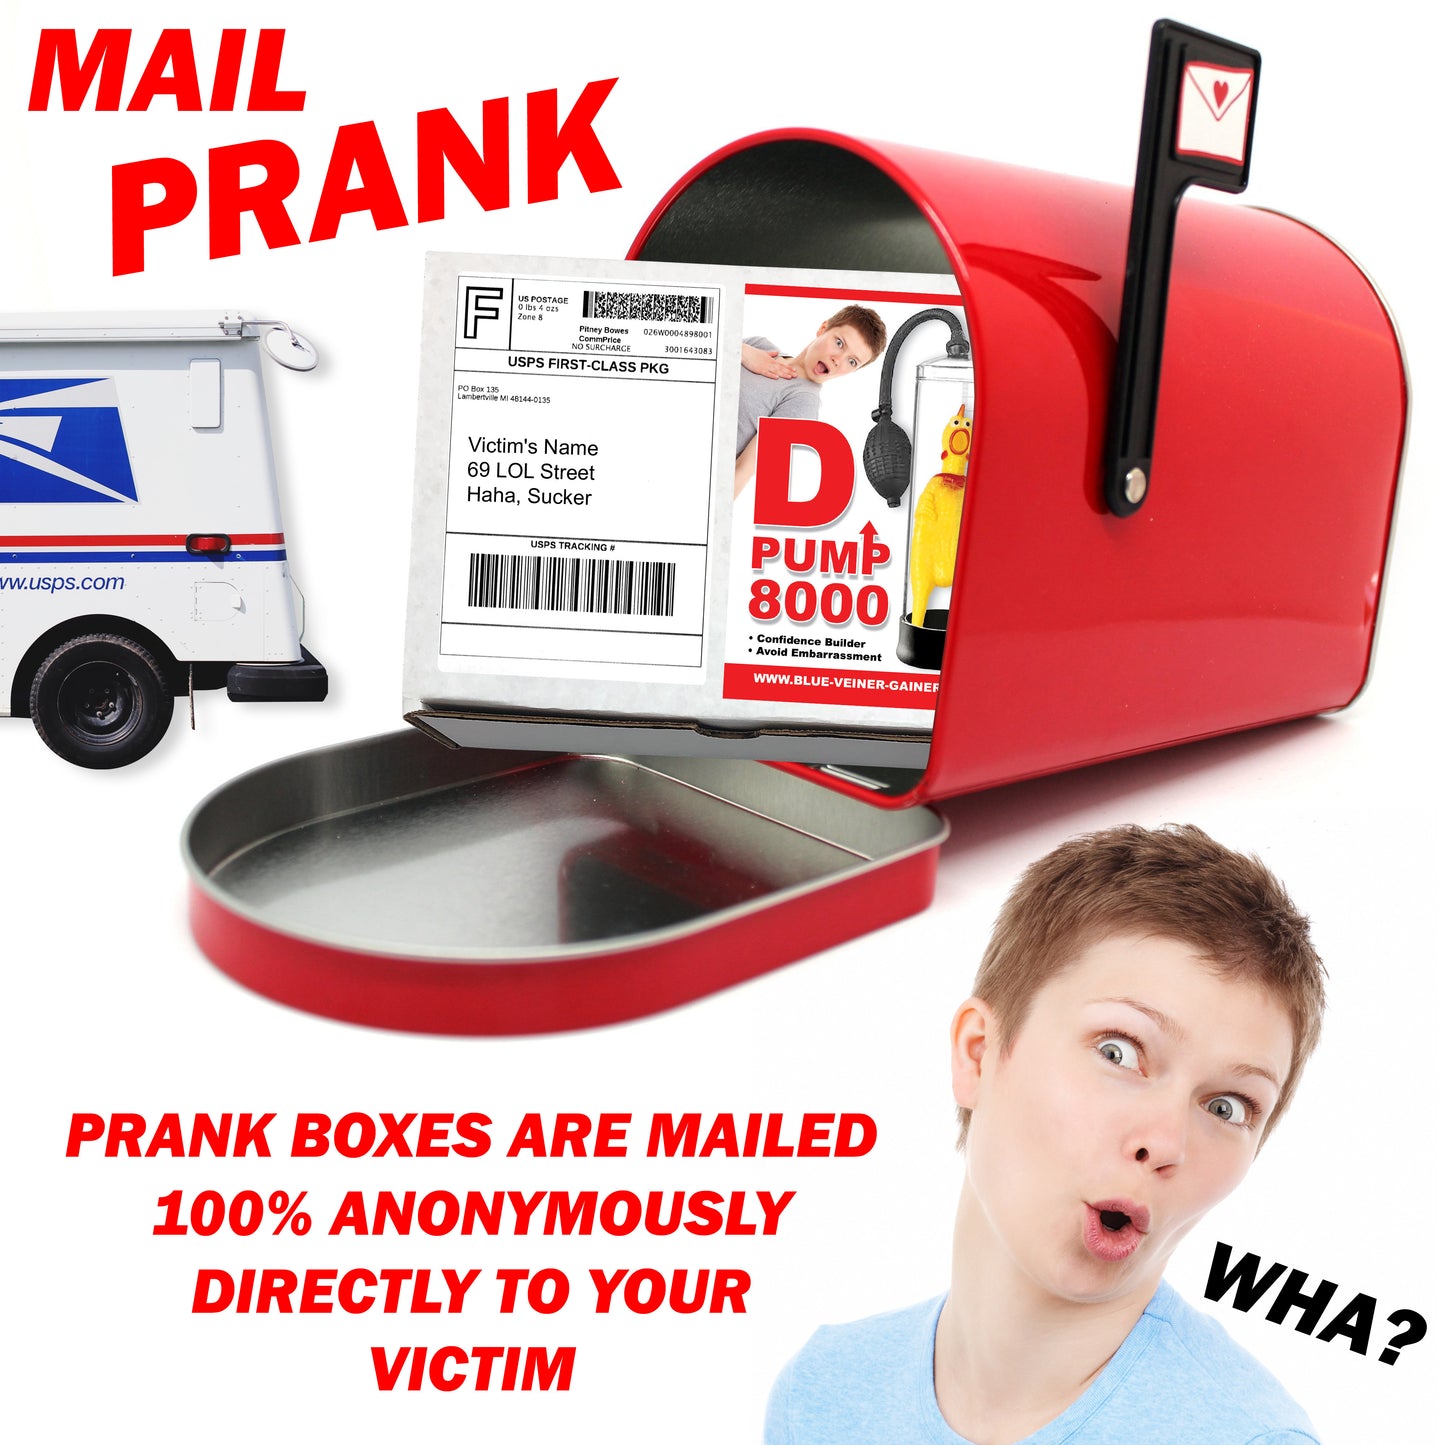 D Pump 8000 Prank Mail